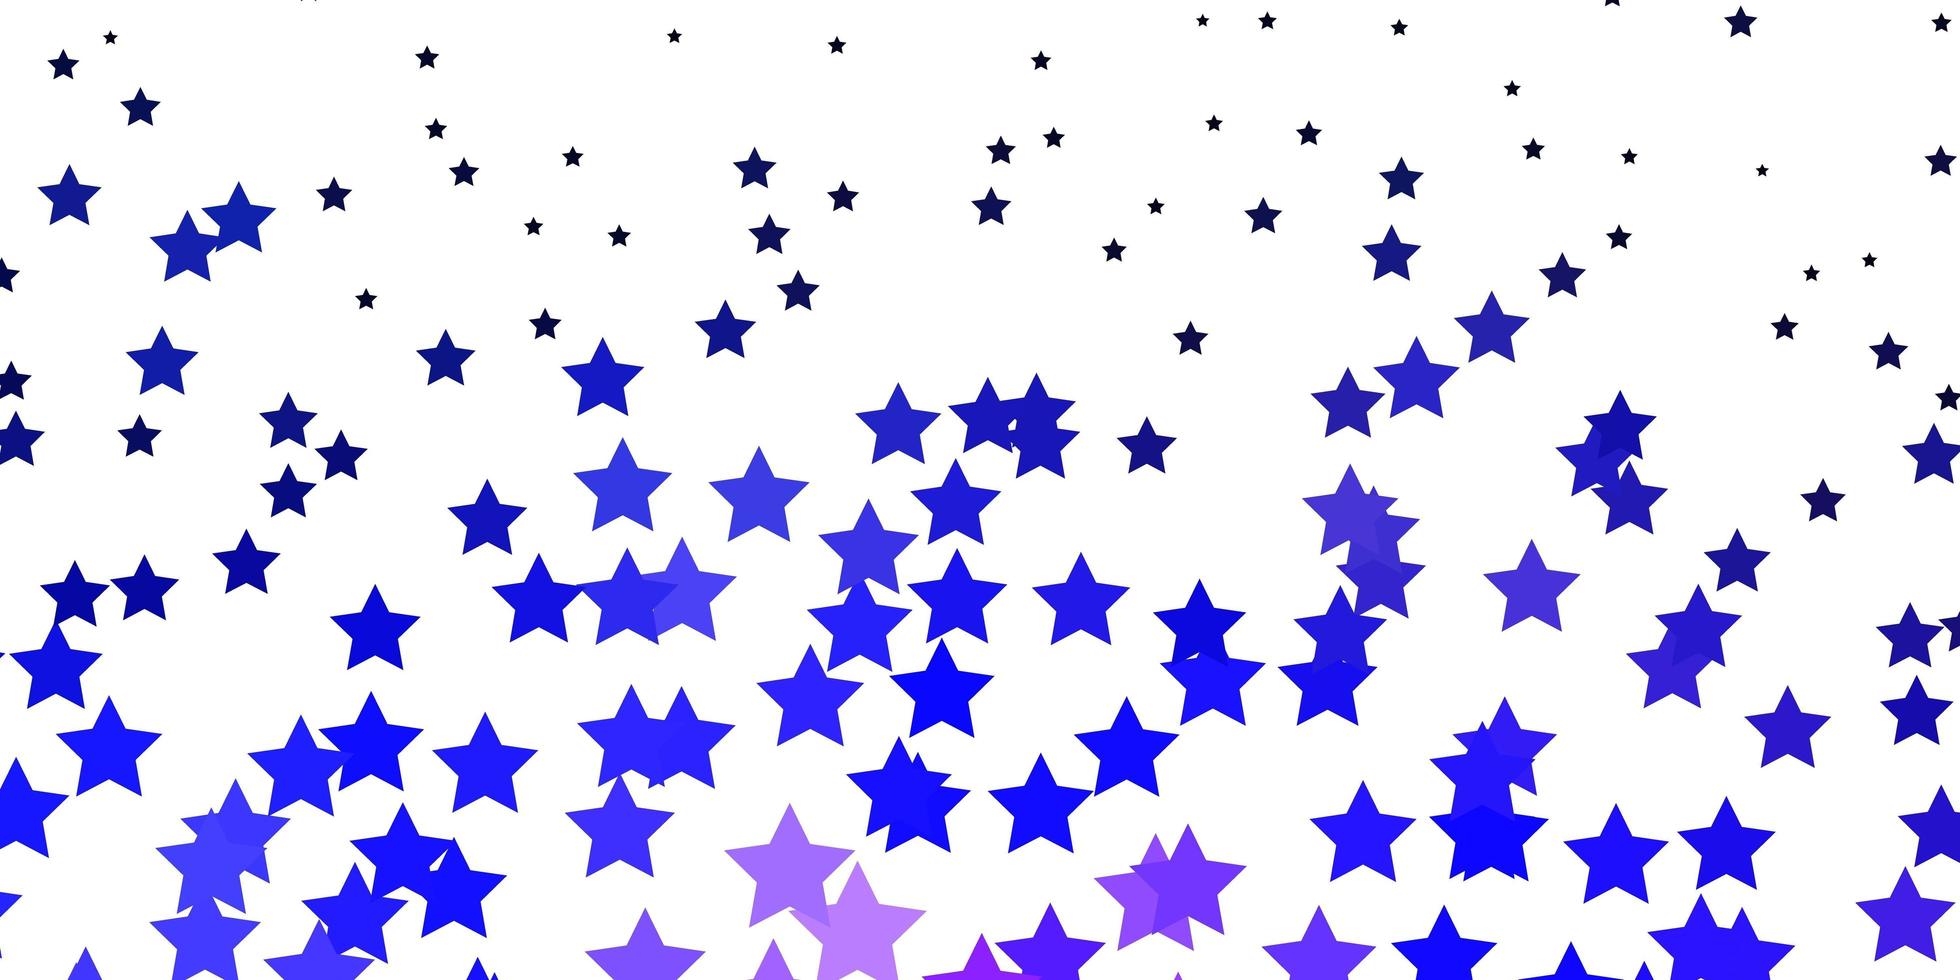 Fondo de vector de color púrpura oscuro con estrellas pequeñas y grandes.